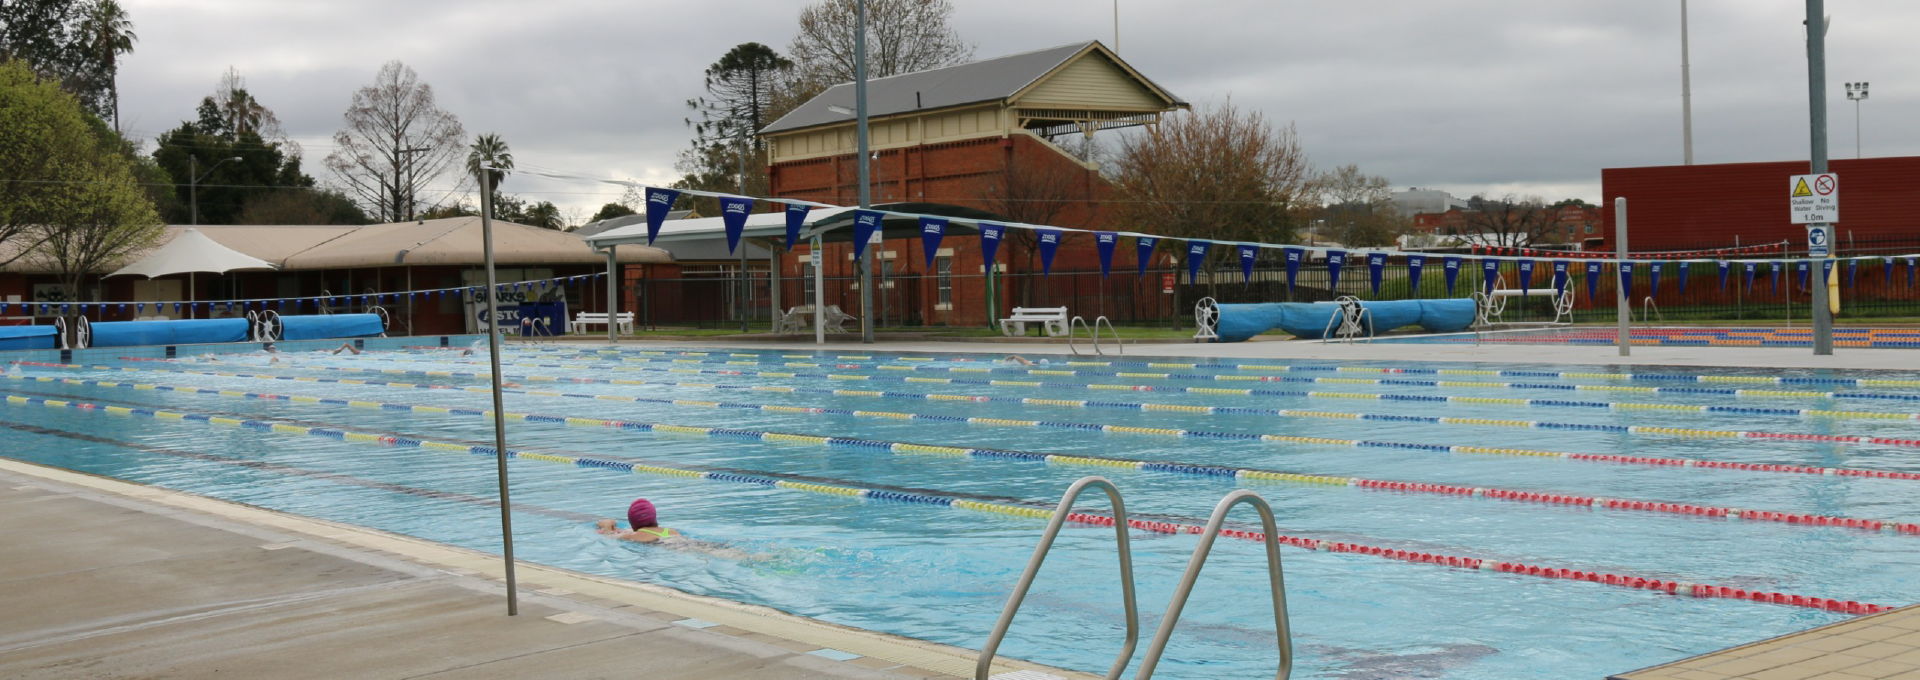 Albury Swim Centre